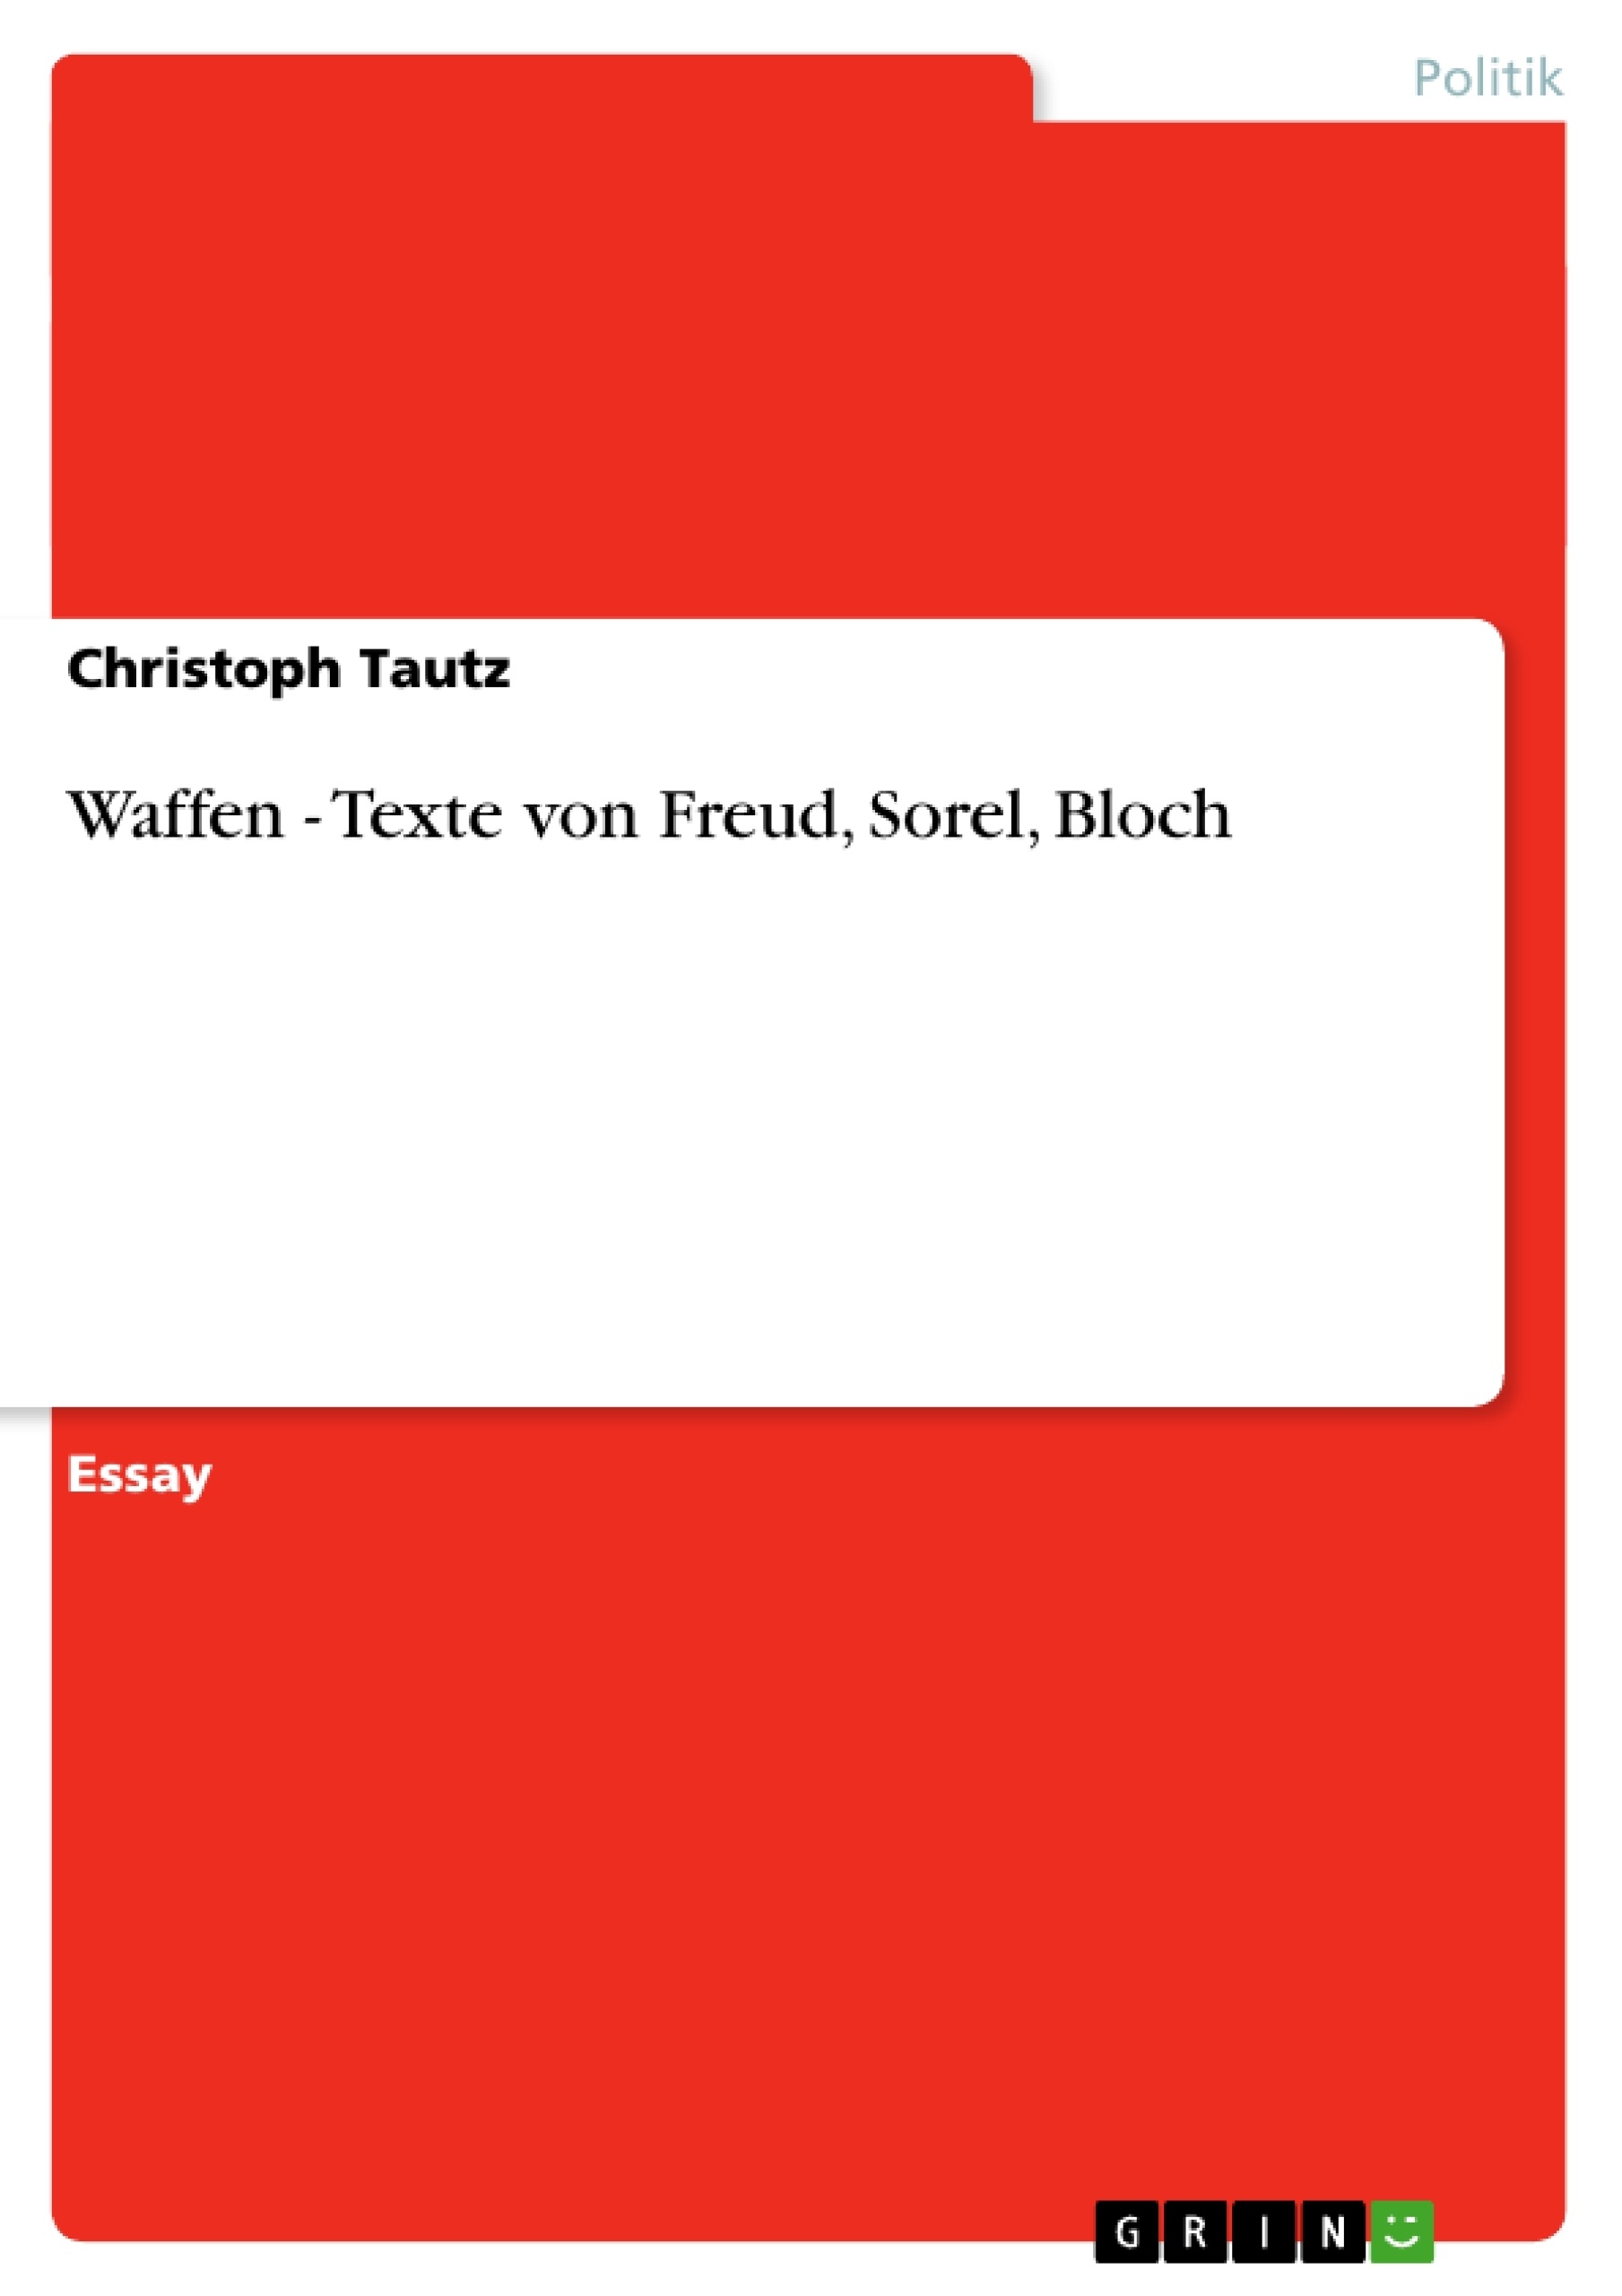 Title: Waffen - Texte von Freud, Sorel, Bloch